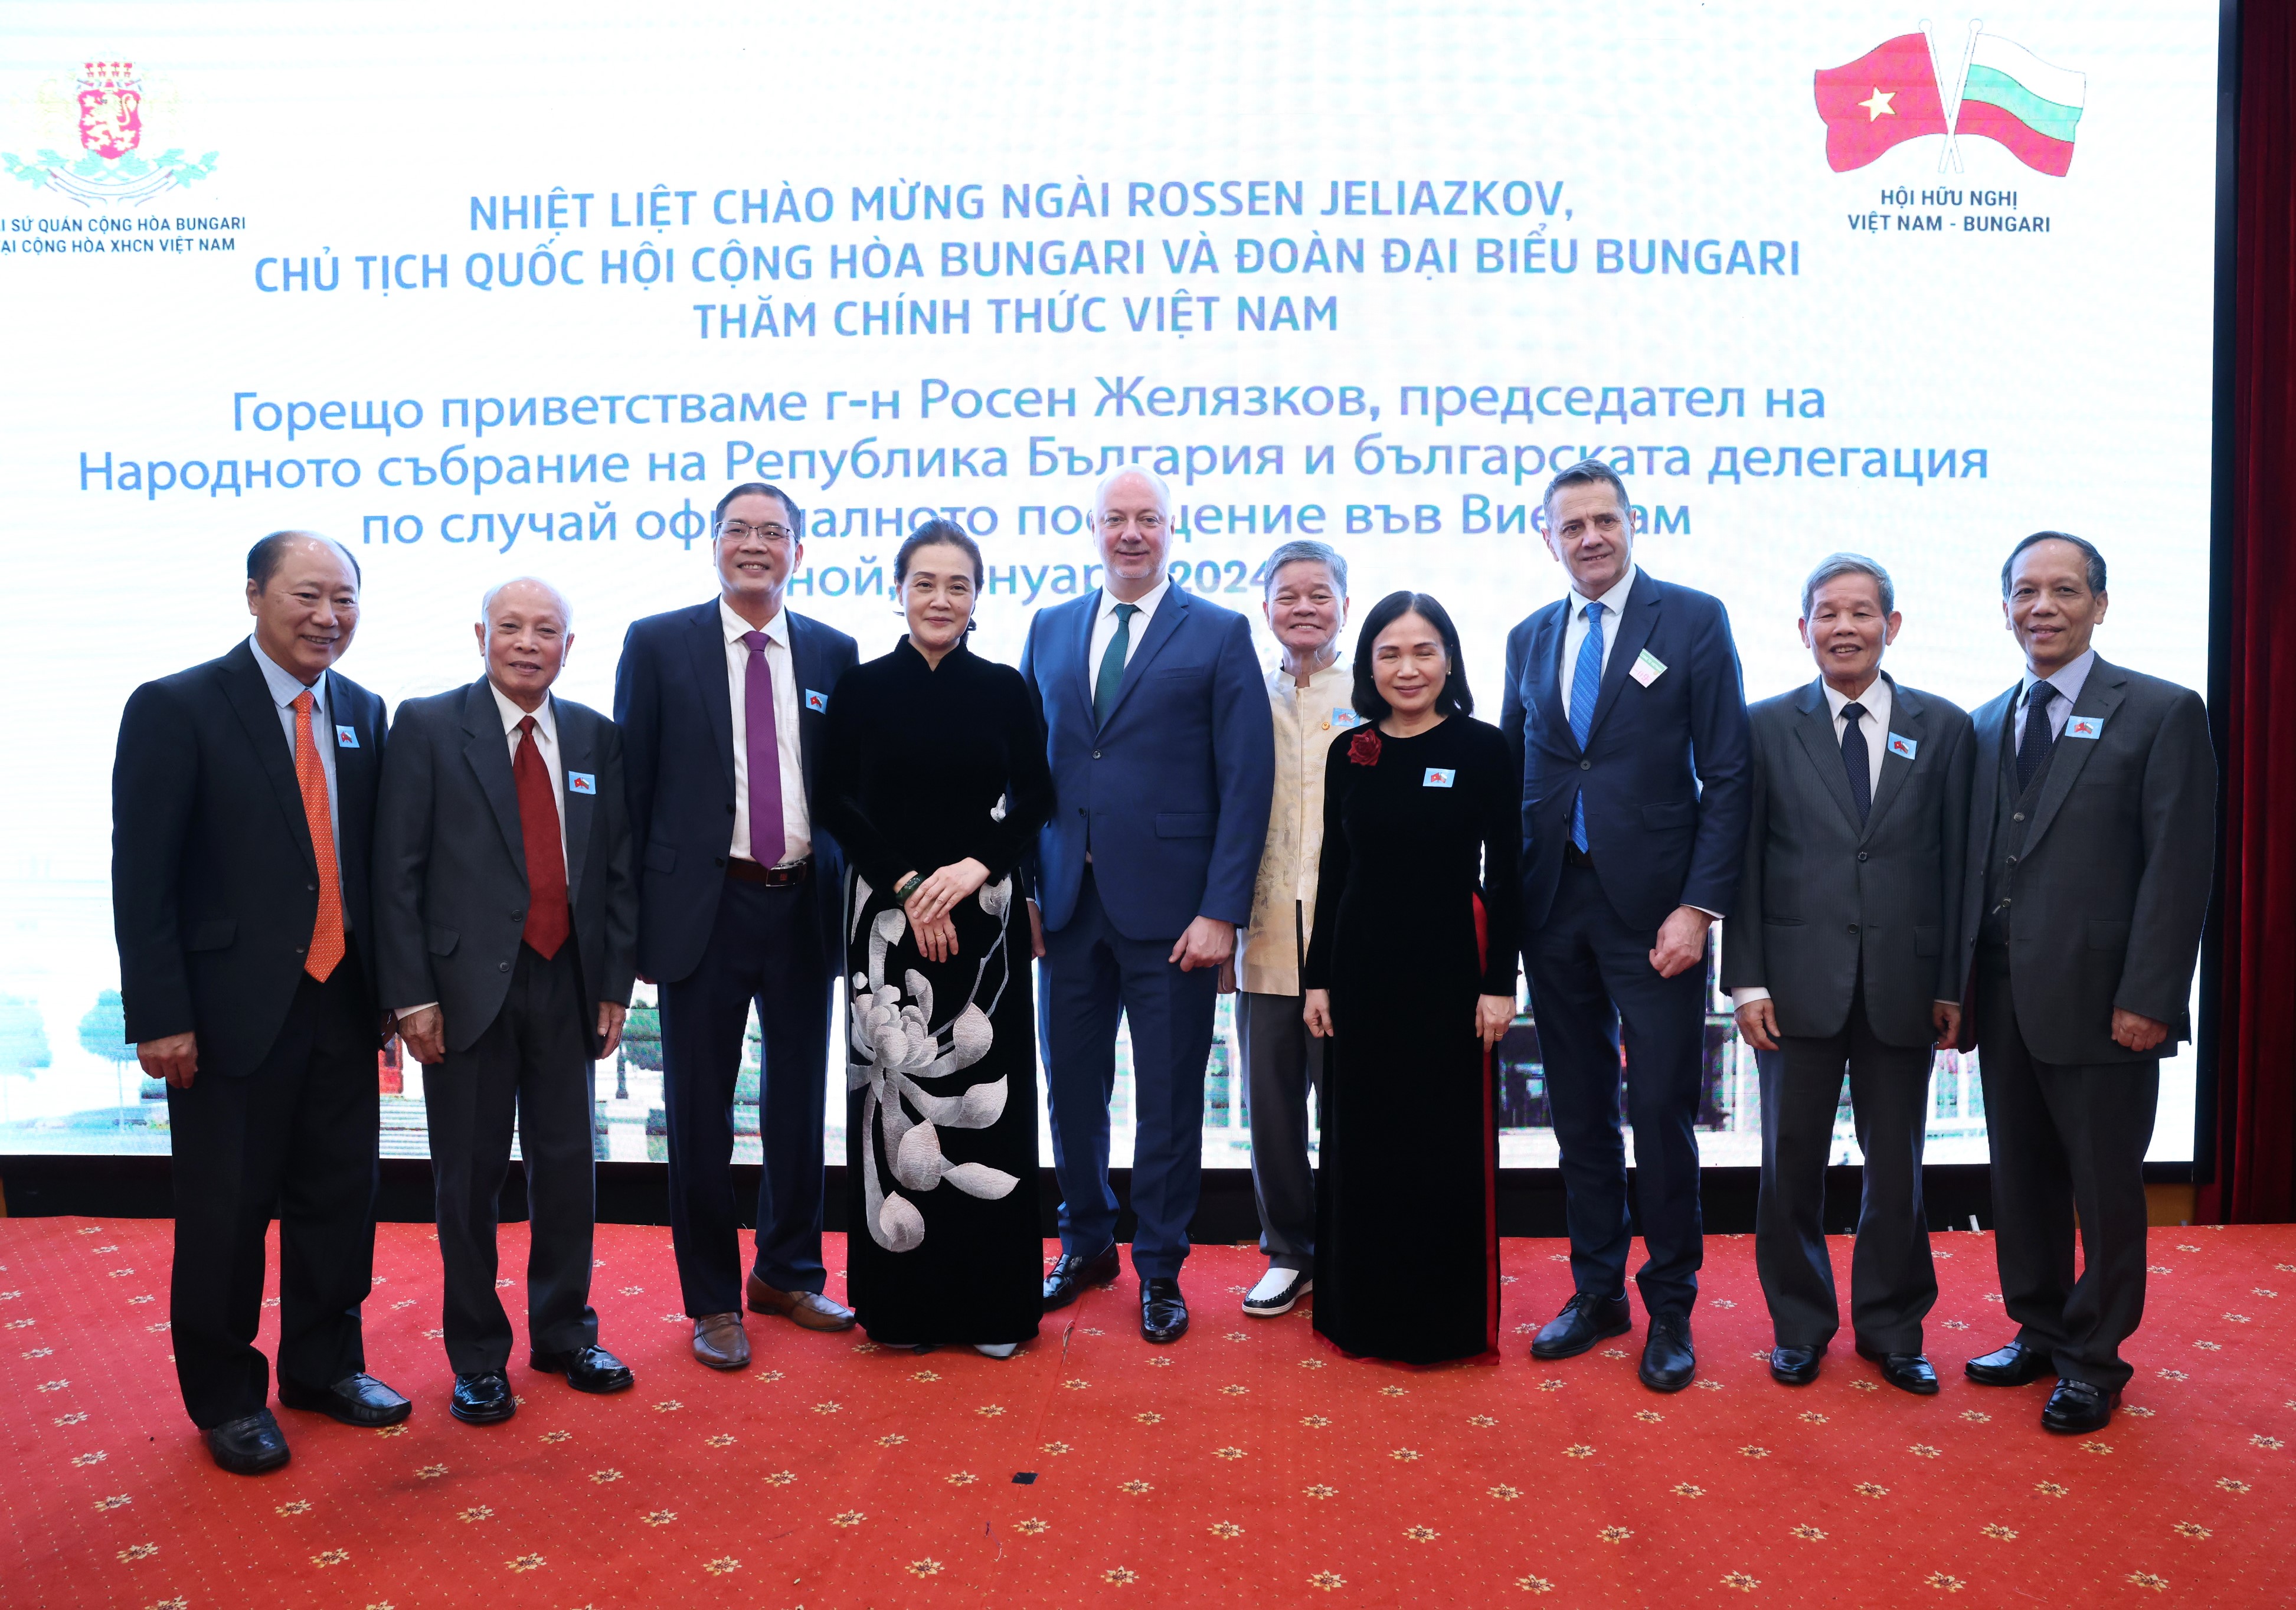 Посолството организира прием по случай посещението на председателя на Народното събрание Росен Желяков във Виетнам